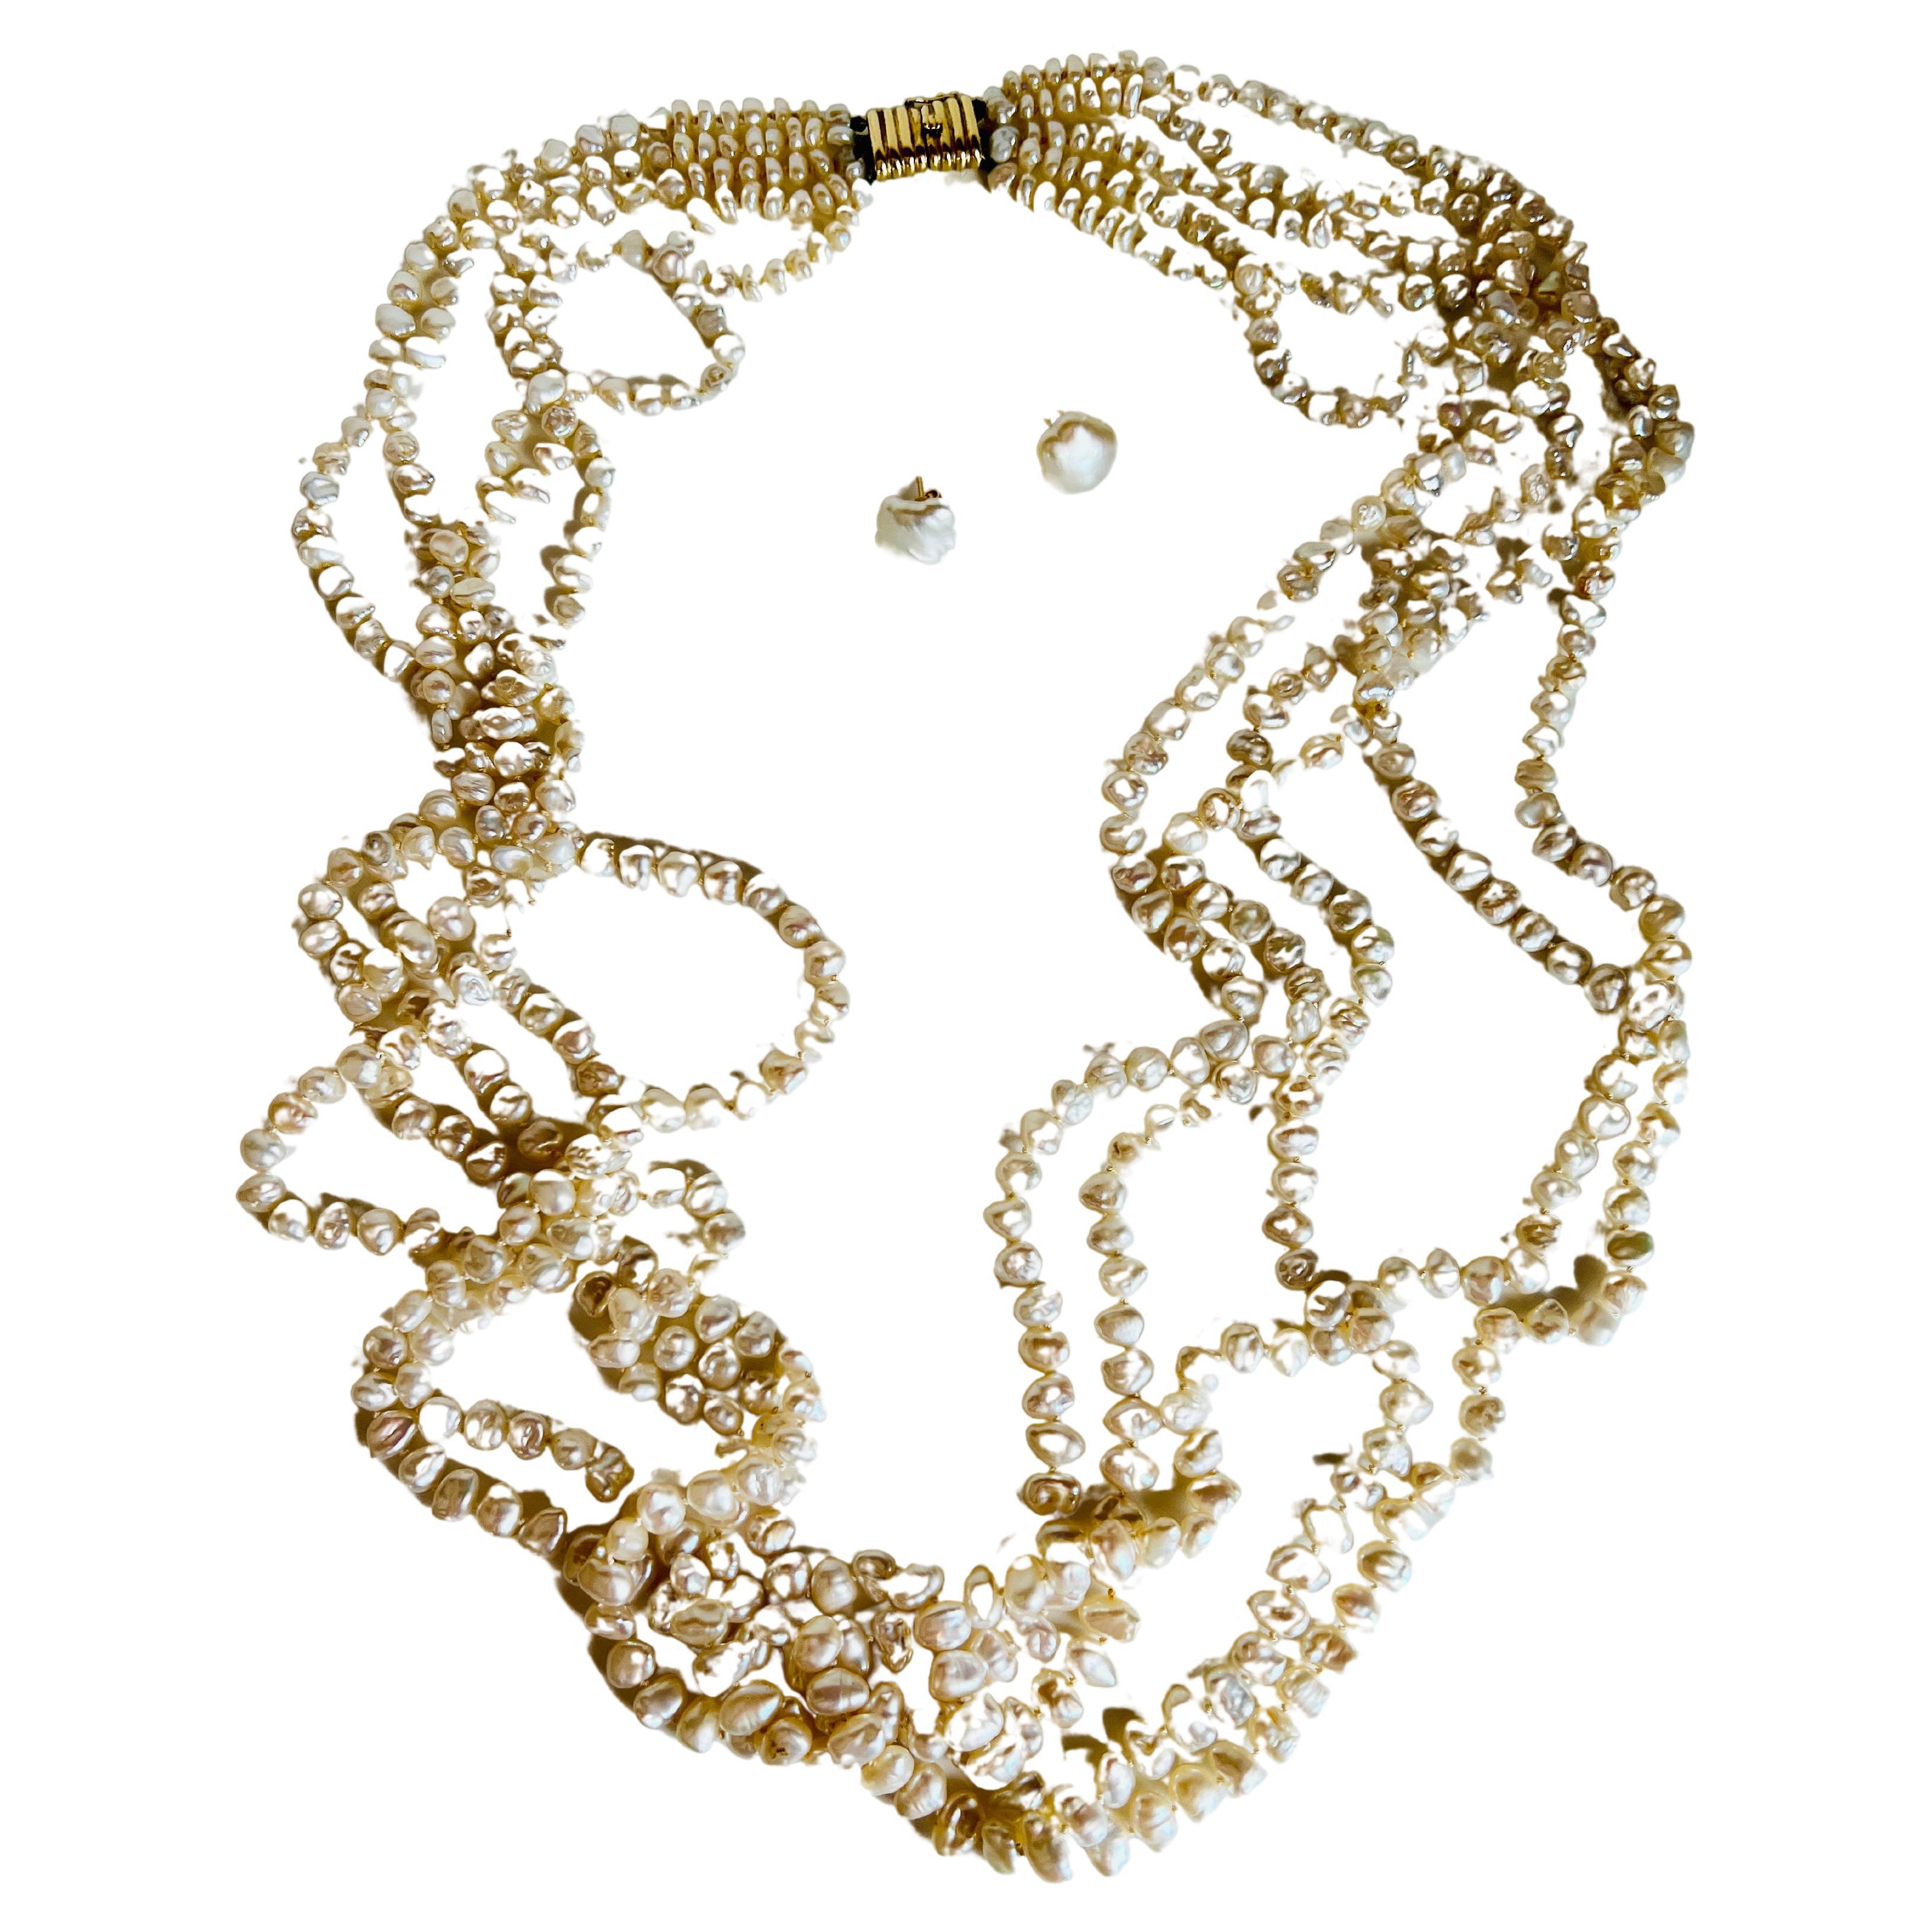 Élevez votre collection avec ce collier et cet ensemble de boucles d'oreilles en perles de culture en or jaune 14k. Le collier torsade est composé de cinq rangs de nombreuses perles de culture d'eau douce Keishi, ajoutant une touche de haute couture